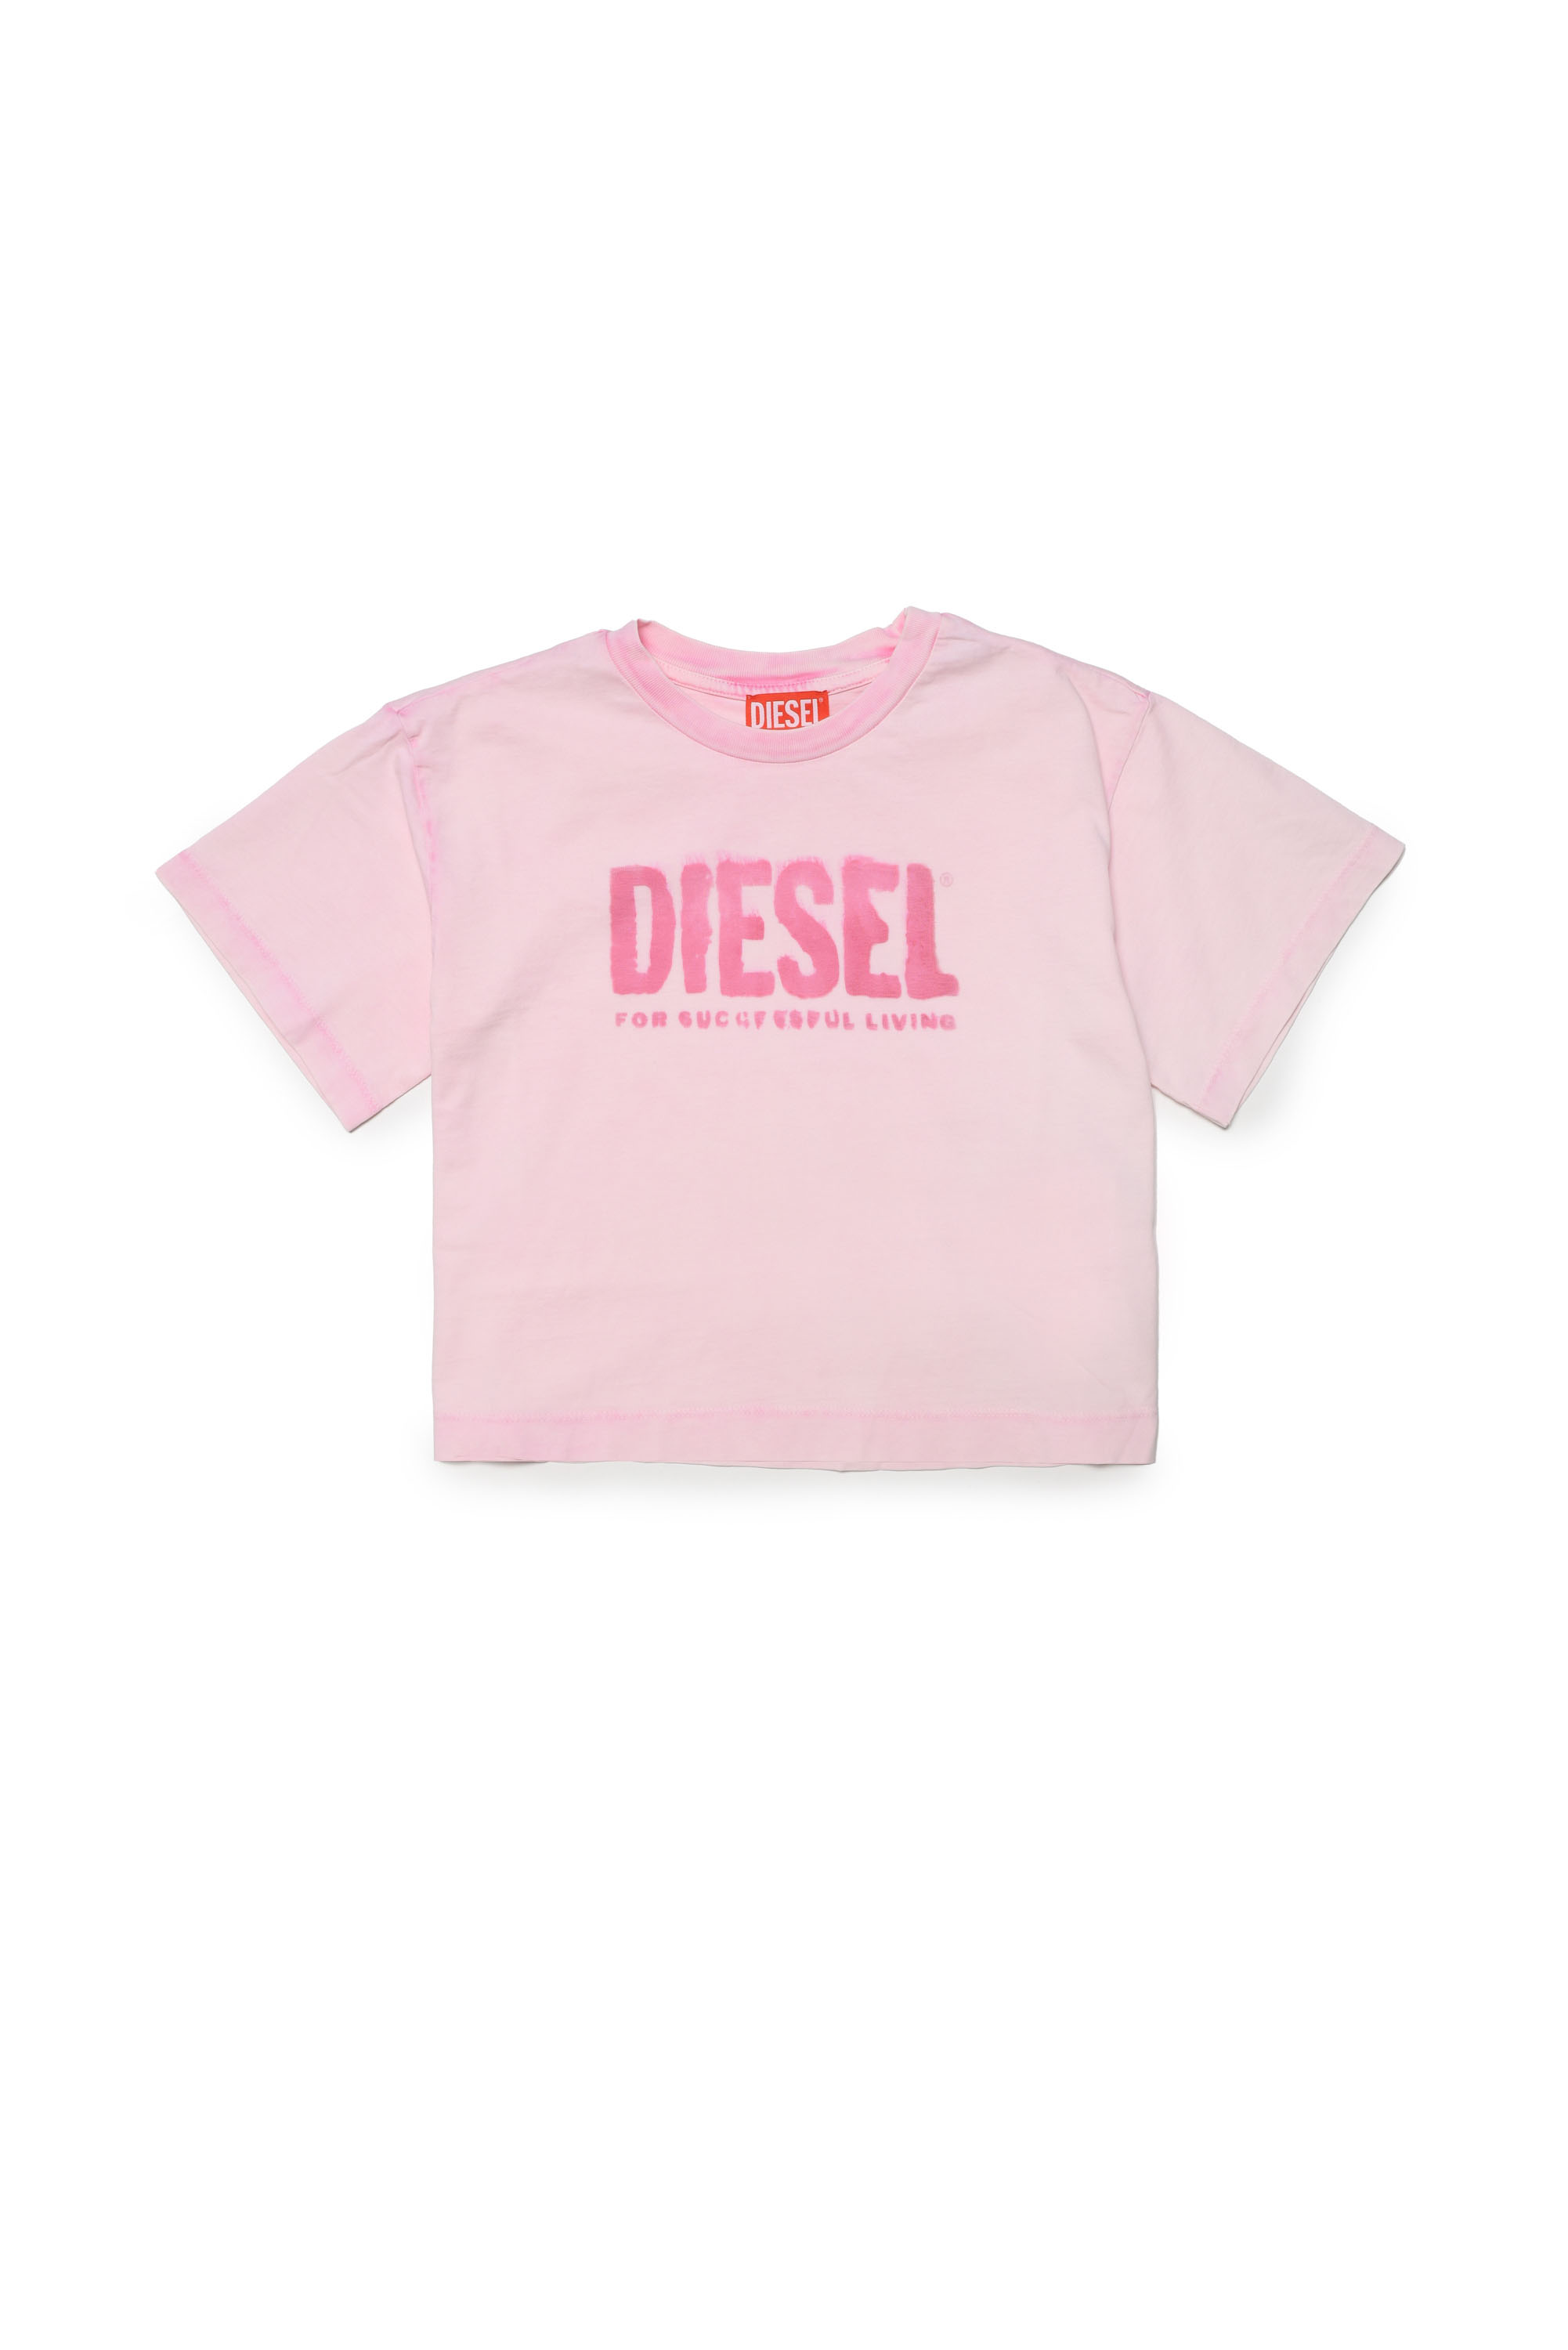 Diesel - TOILFY, Pink - Image 1